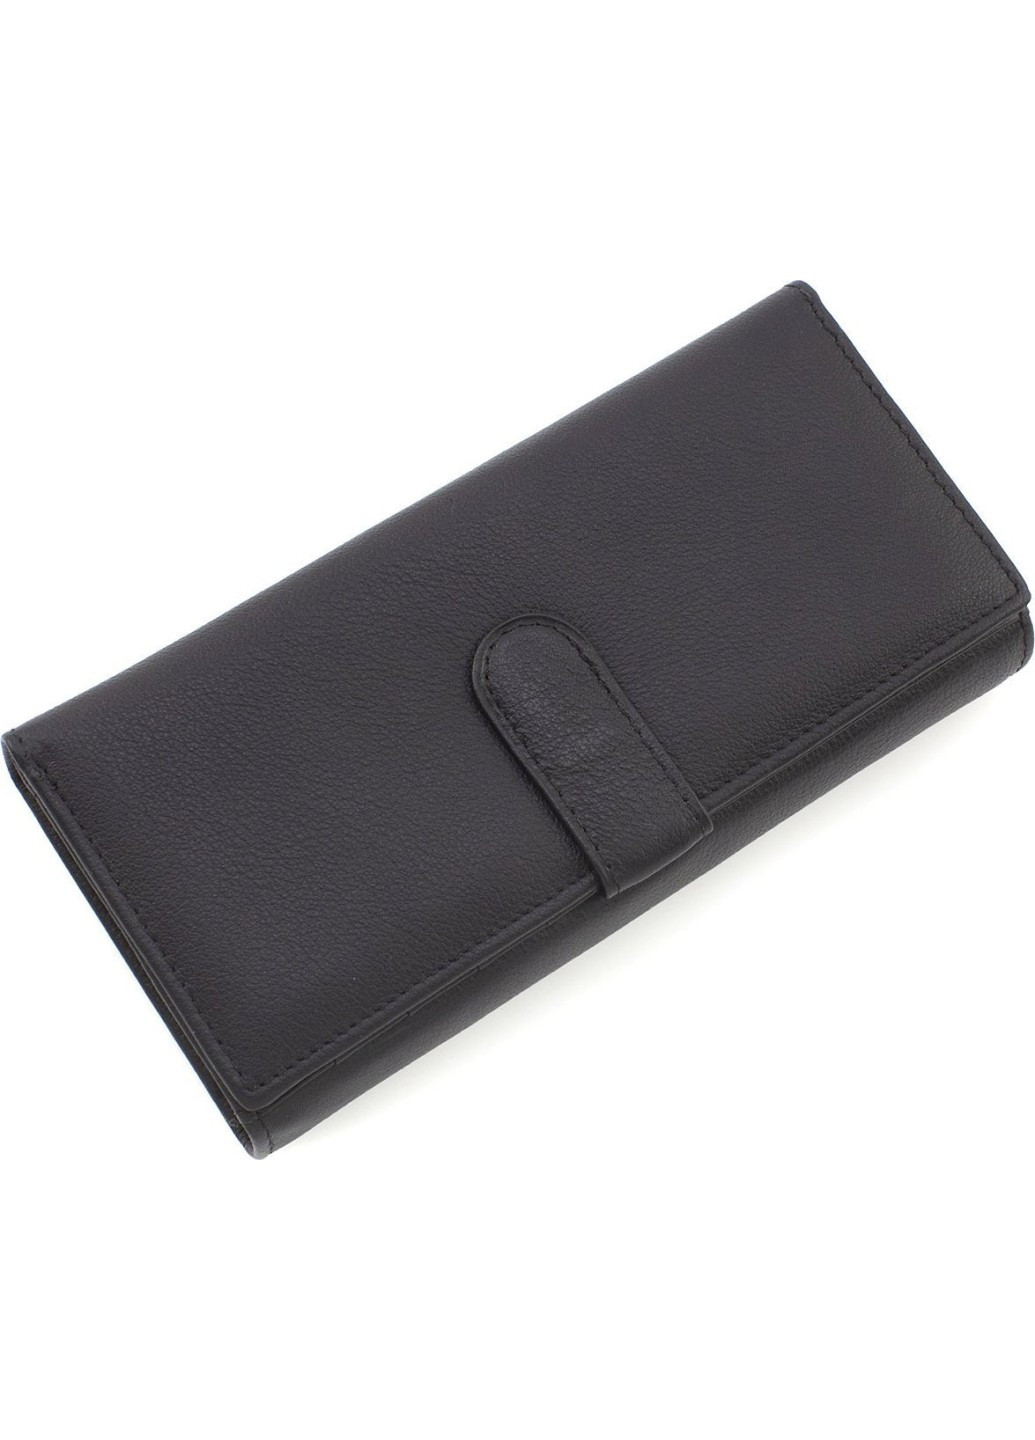 Жіночий гаманець з натуральної шкіри на два відділення 18,5х9 MA246 - Black (17174) чорний Marco Coverna (259752490)